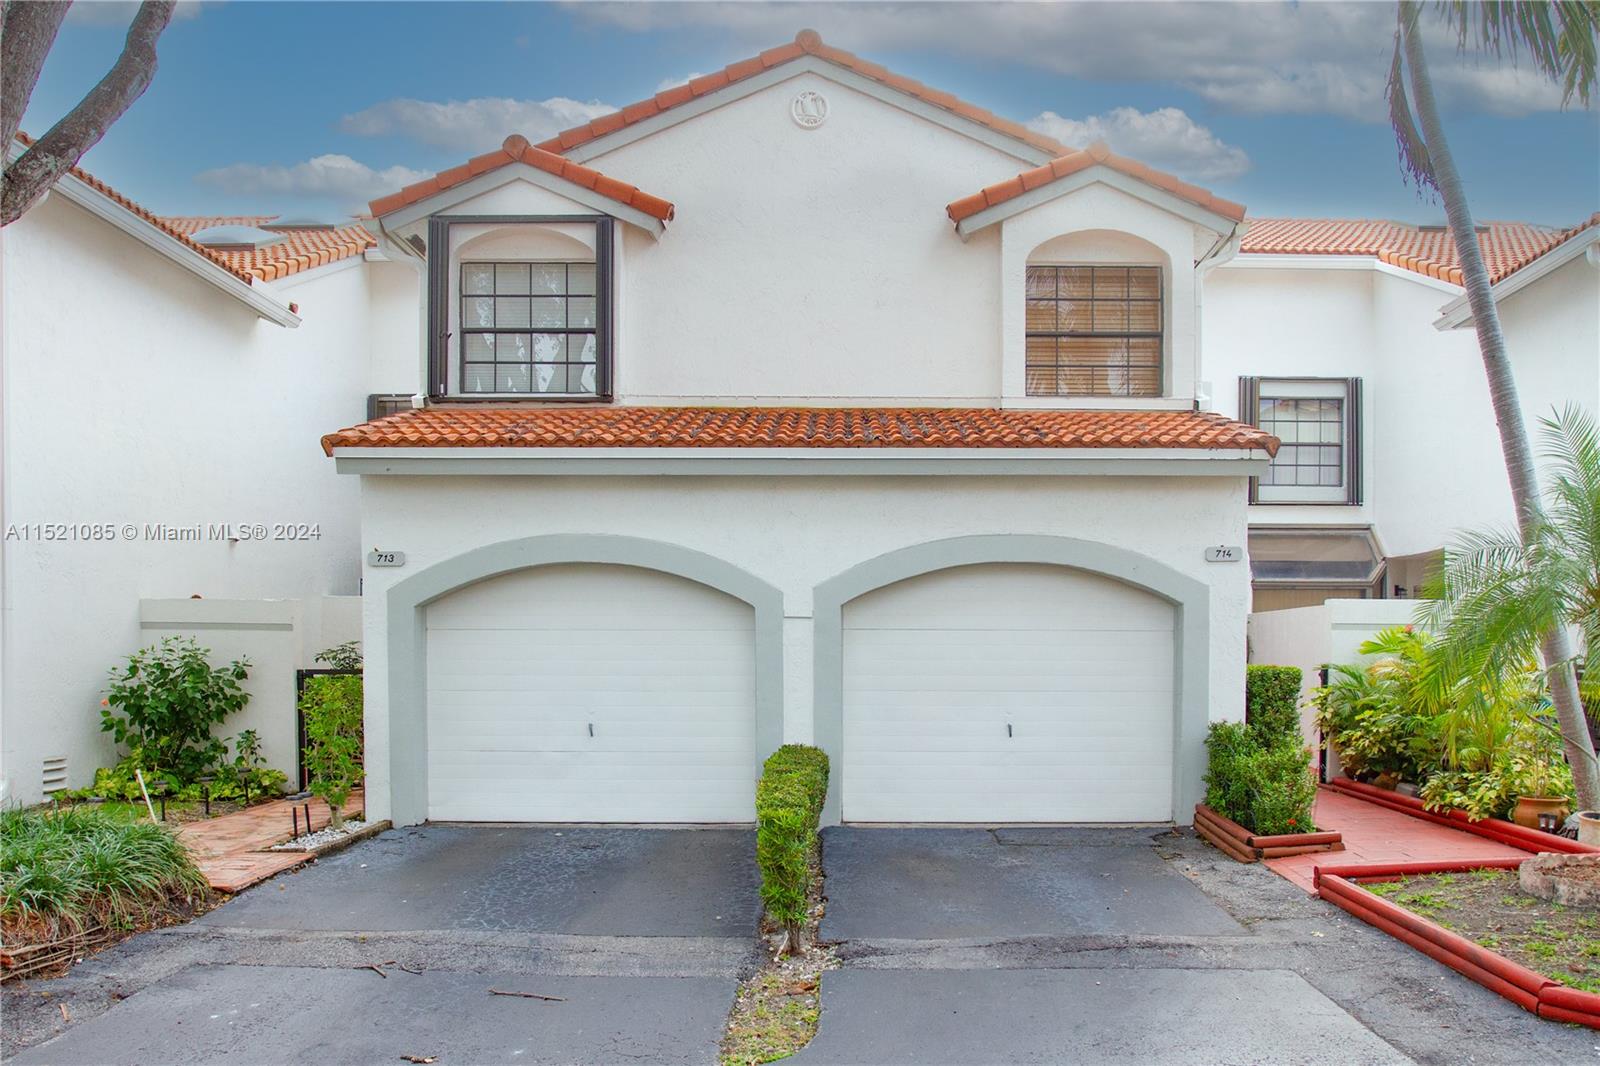 Property for Sale at 3500 Magellan Cir Cir 714, Aventura, Miami-Dade County, Florida - Bedrooms: 3 
Bathrooms: 3  - $775,000